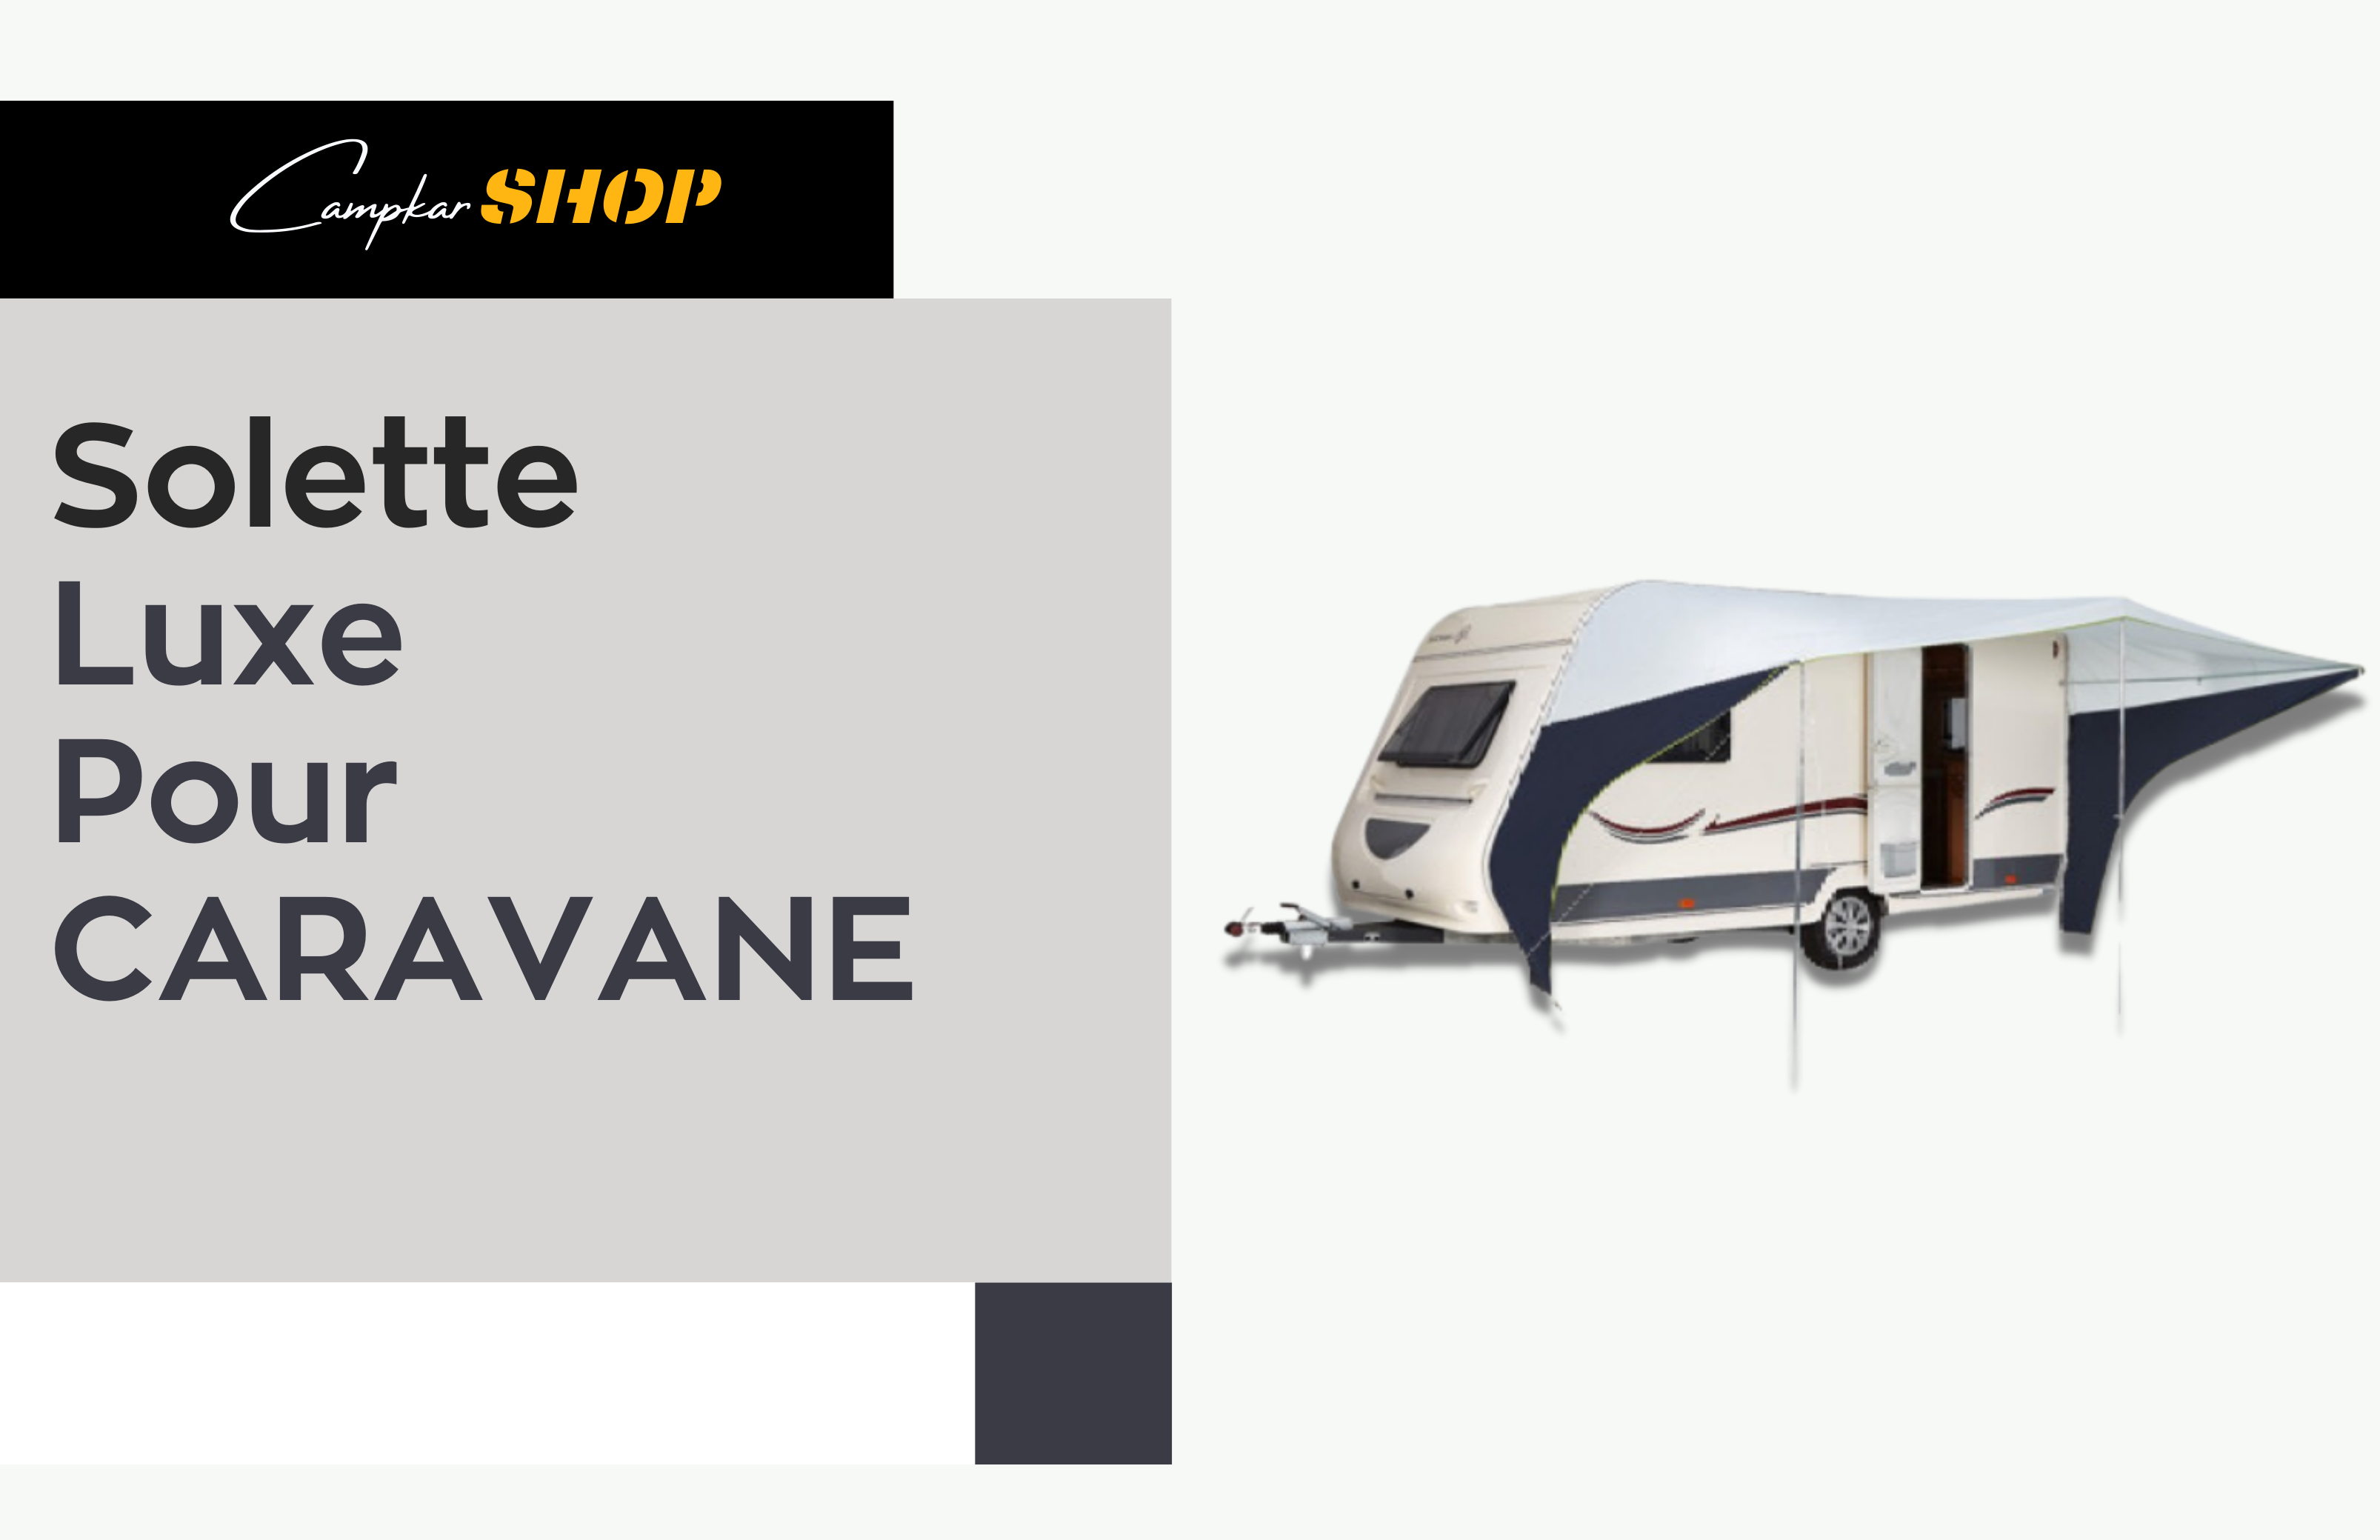 Solette Caravane De Luxe 2,40m - Campkar.Shop